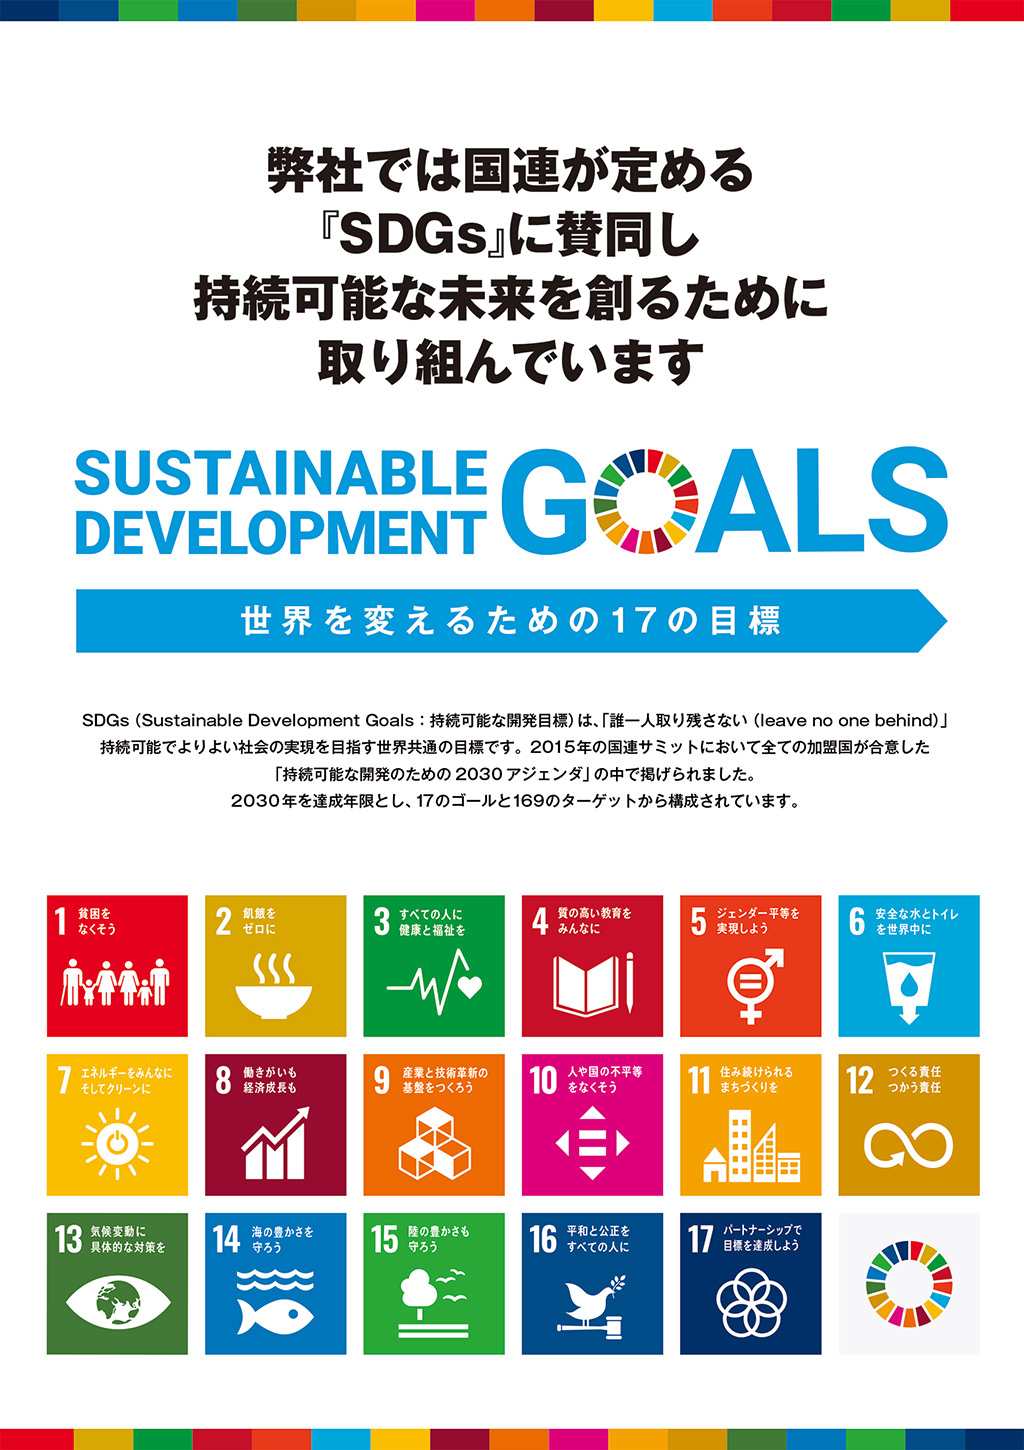 弊社では国連が定める『SDGs』に賛同し持続可能な未来を創るために取り組んでいます